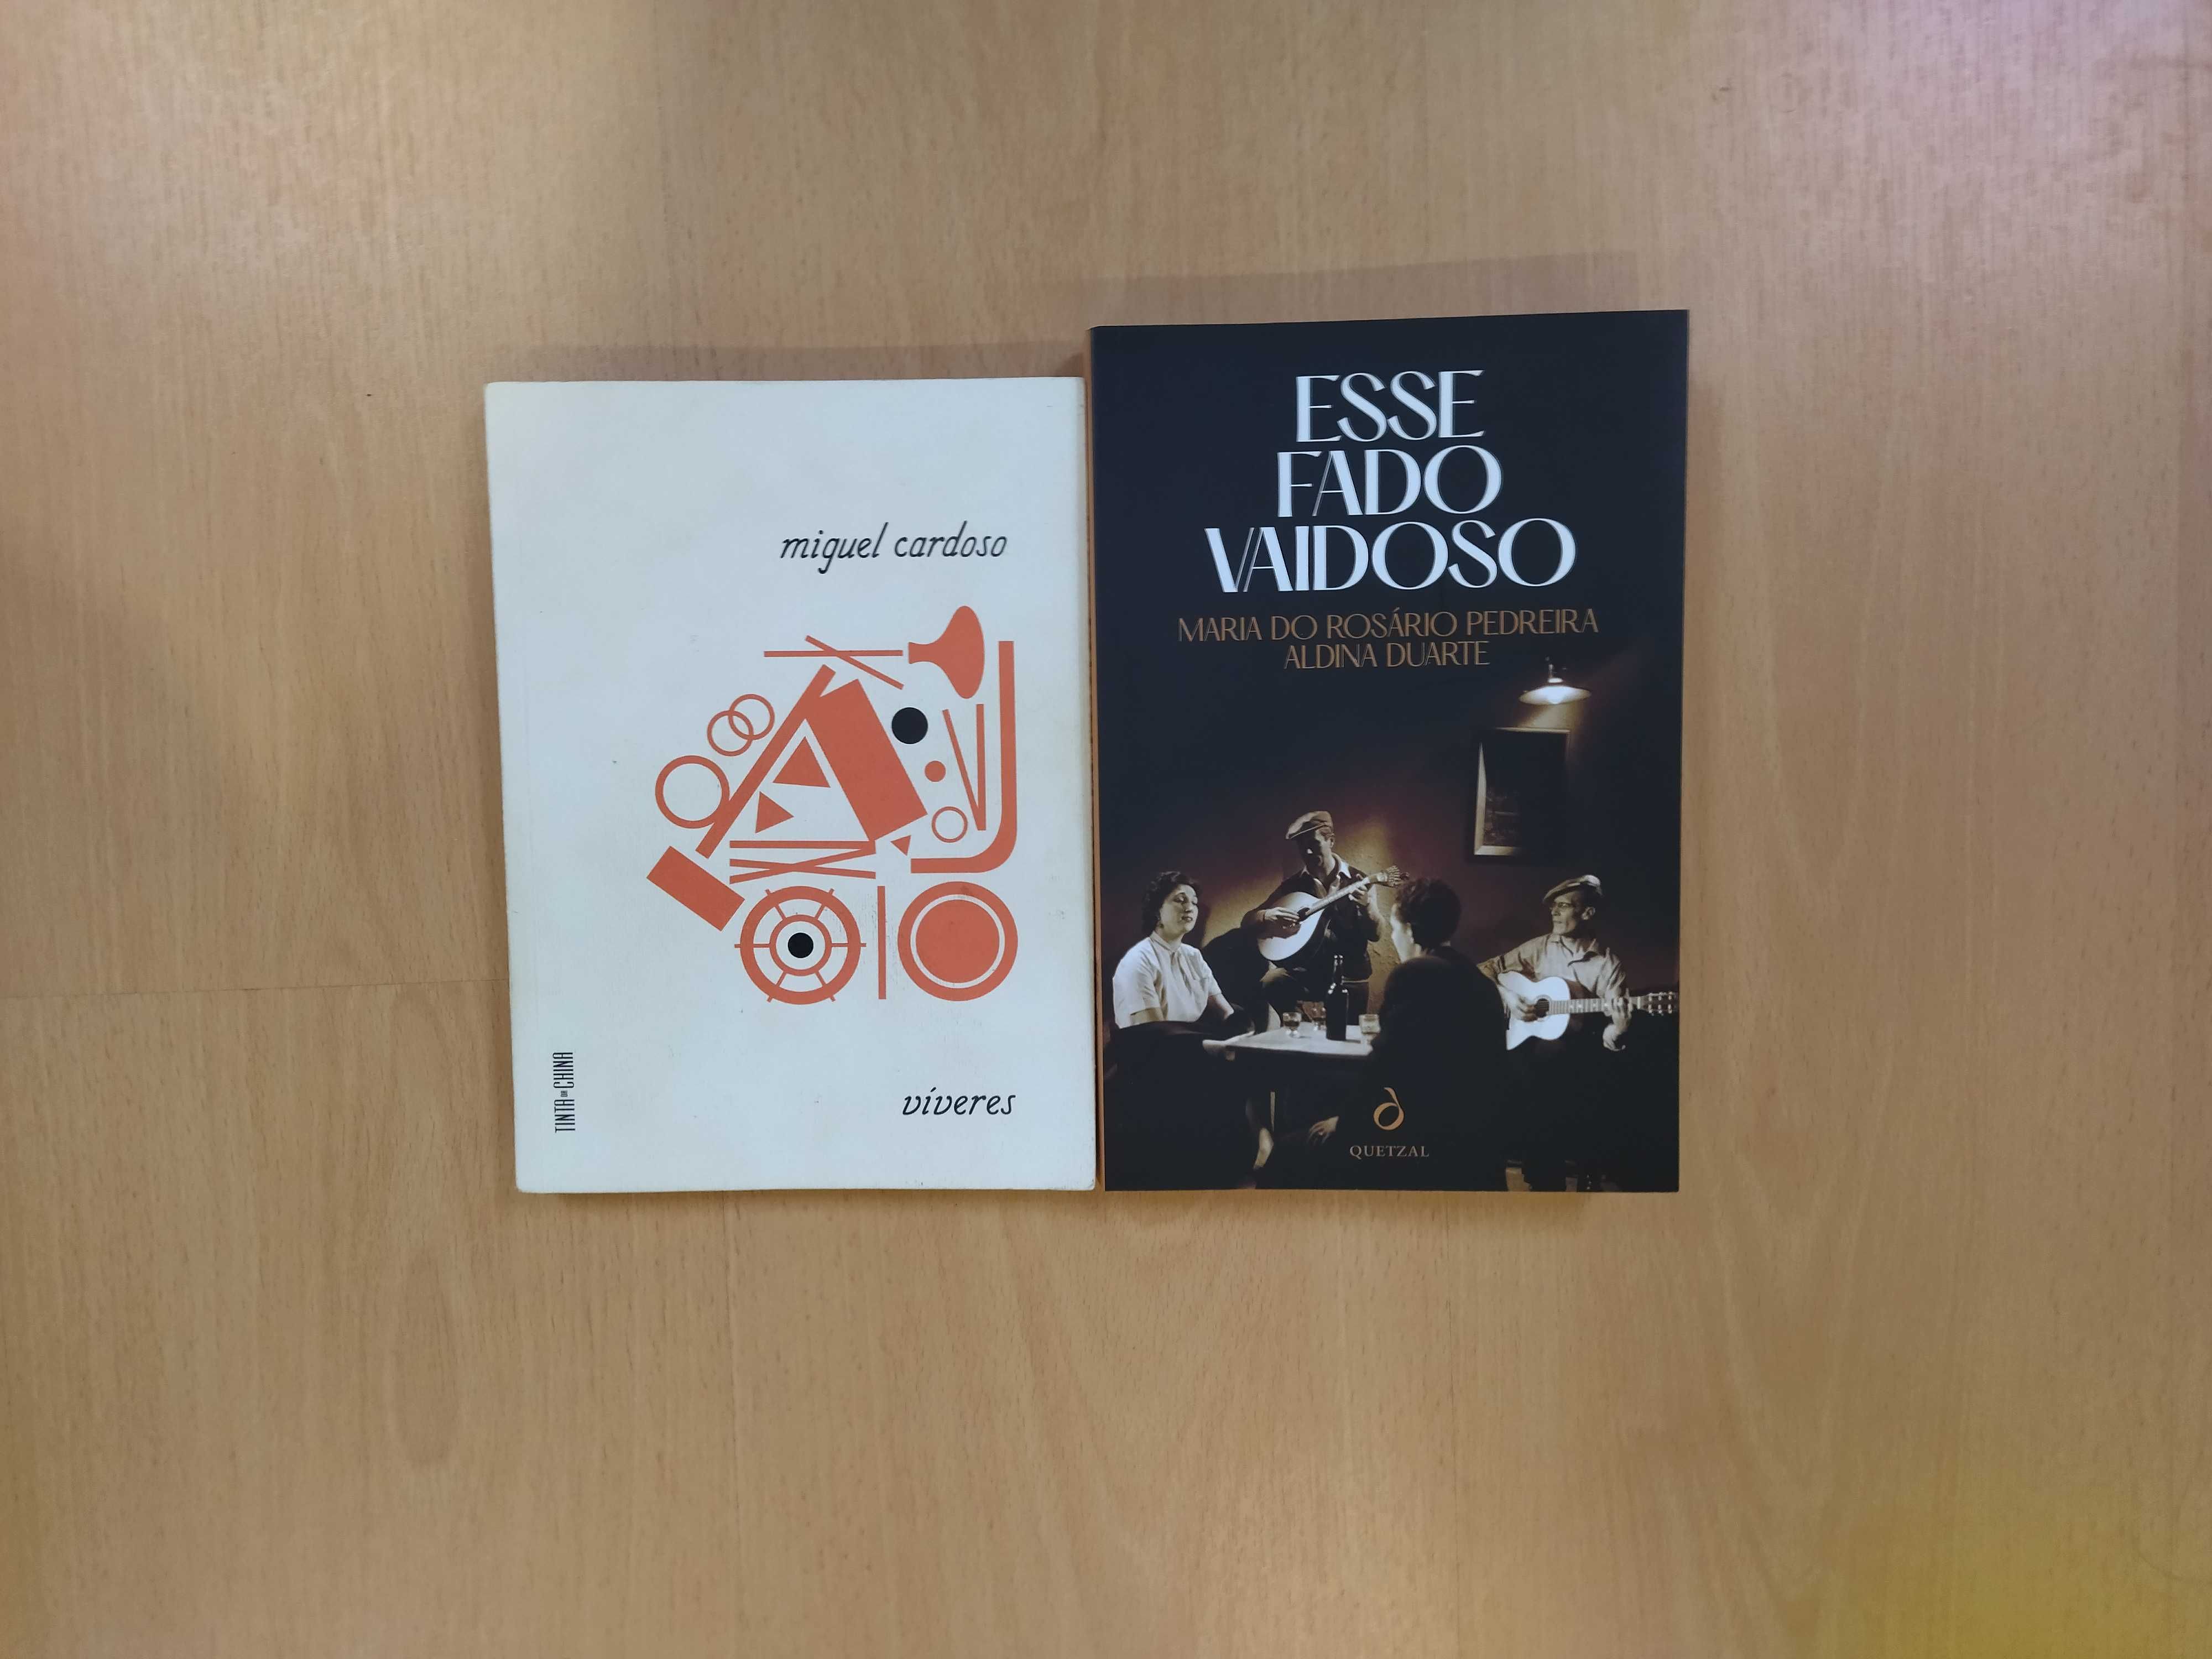 Livros de vários autores portugueses e lusófonos; desde 2 €